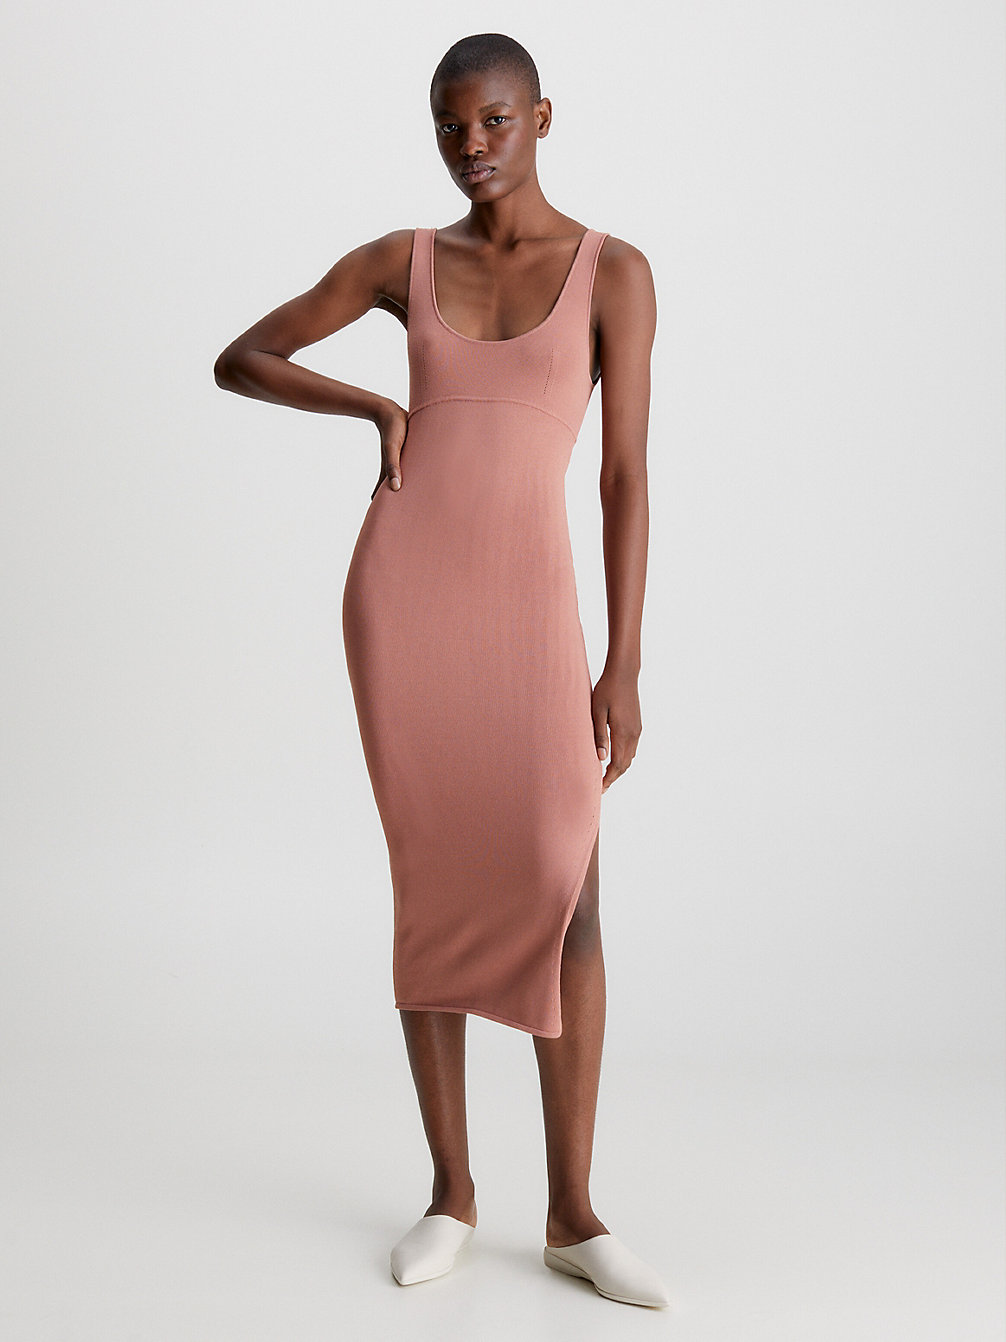 SUNDOWN ORANGE Slim Knitted Bodycon Dress undefined women Calvin Klein